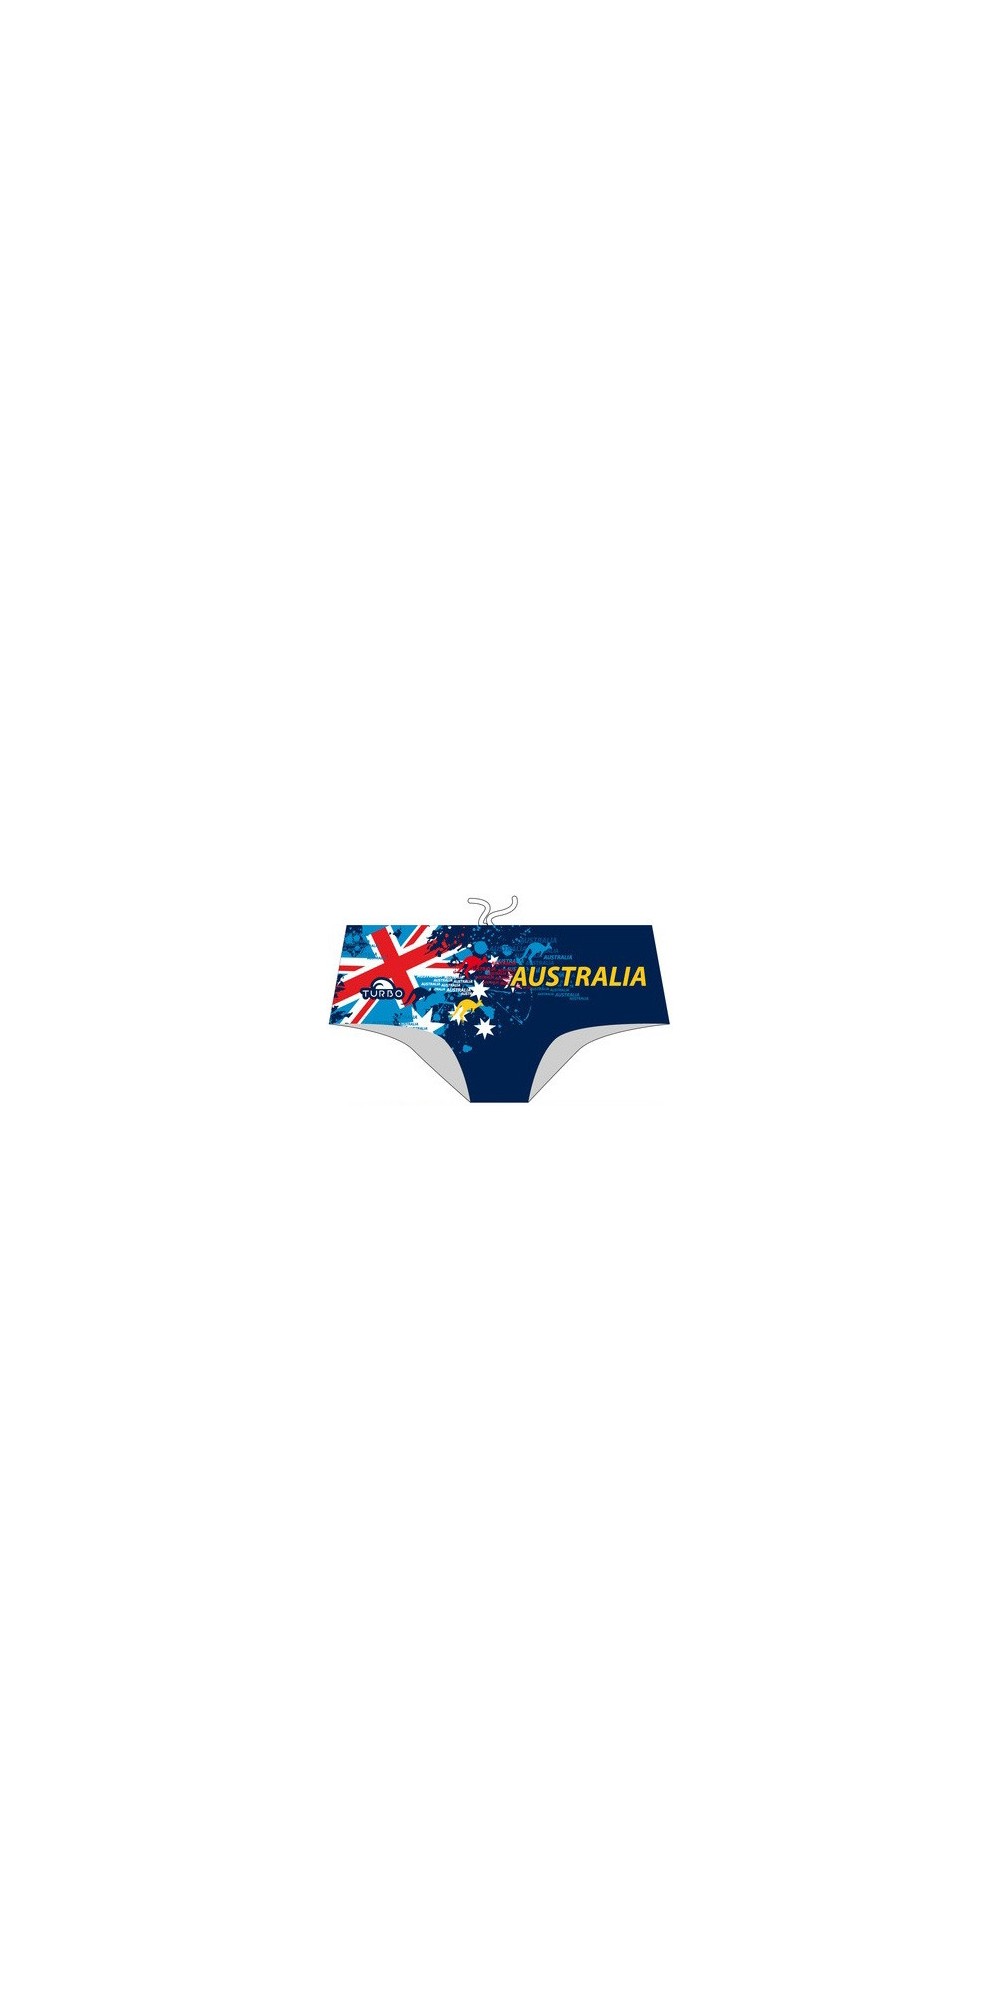 Australia Country (3 Semaines)